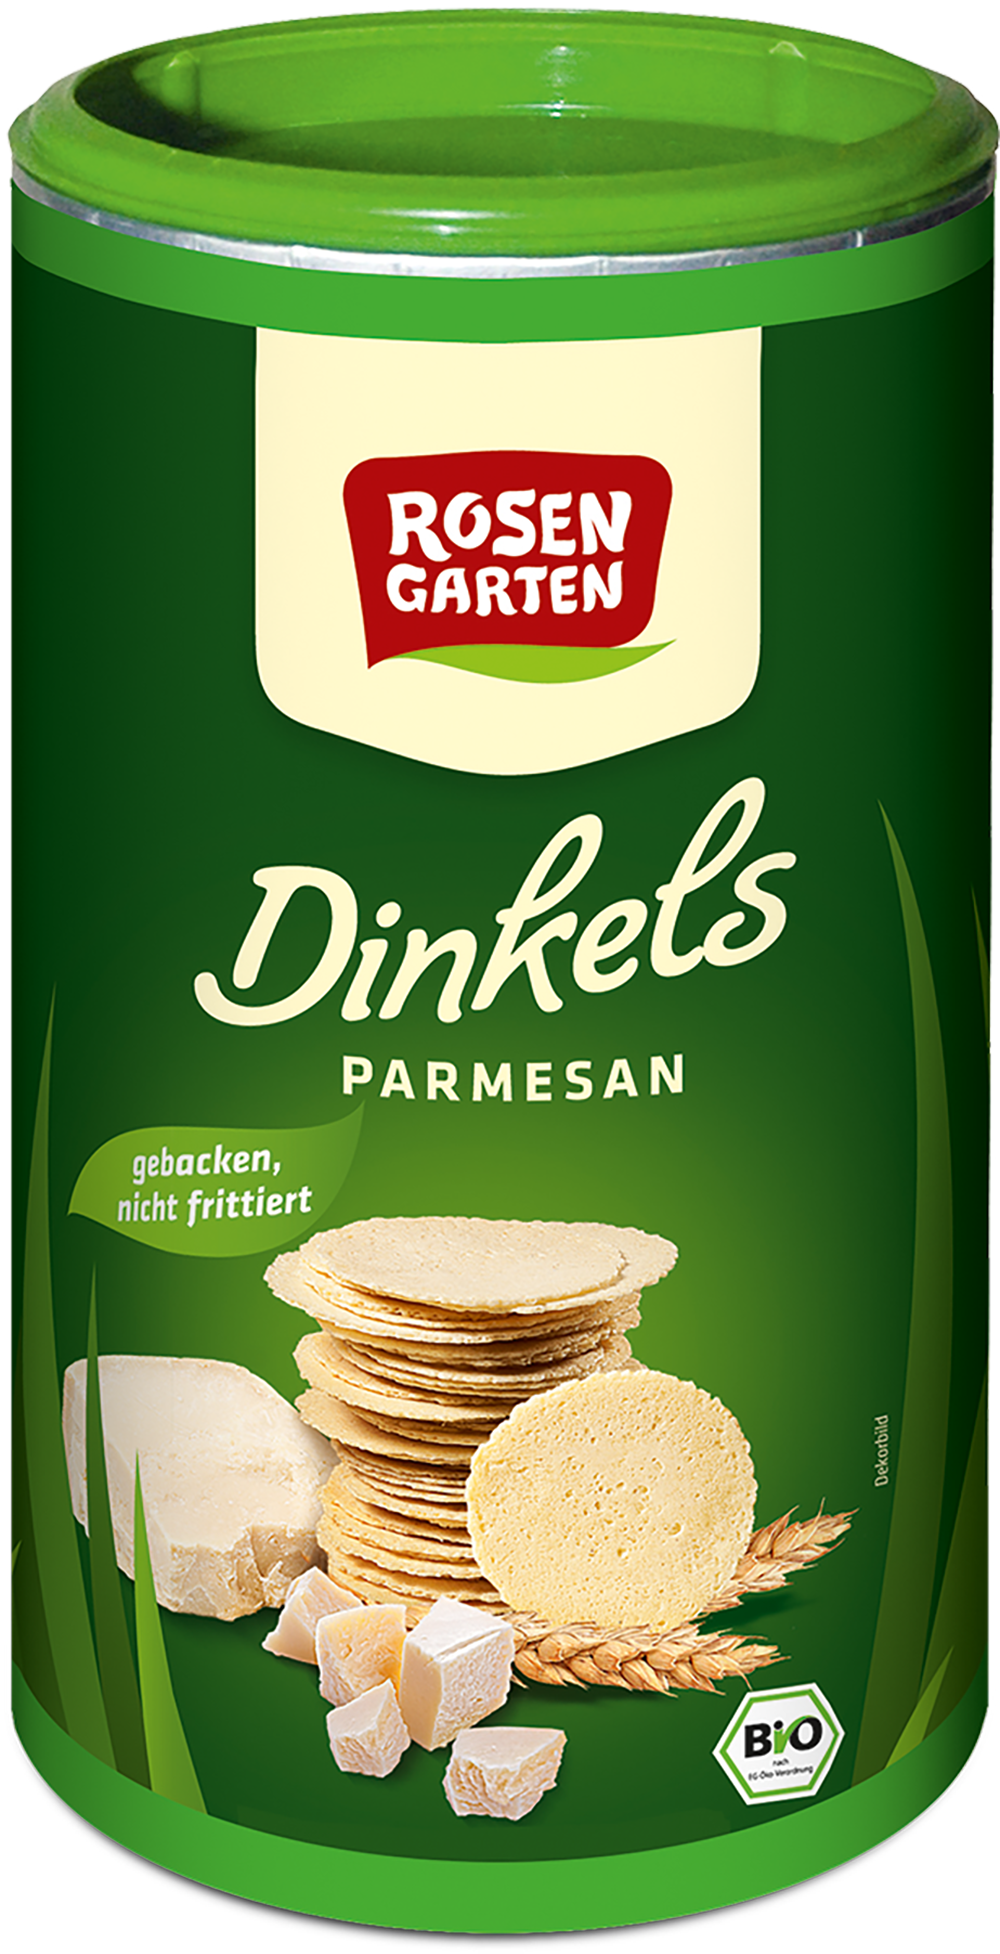 Rosengarten Dinkels Parmesan Cräcker 100g